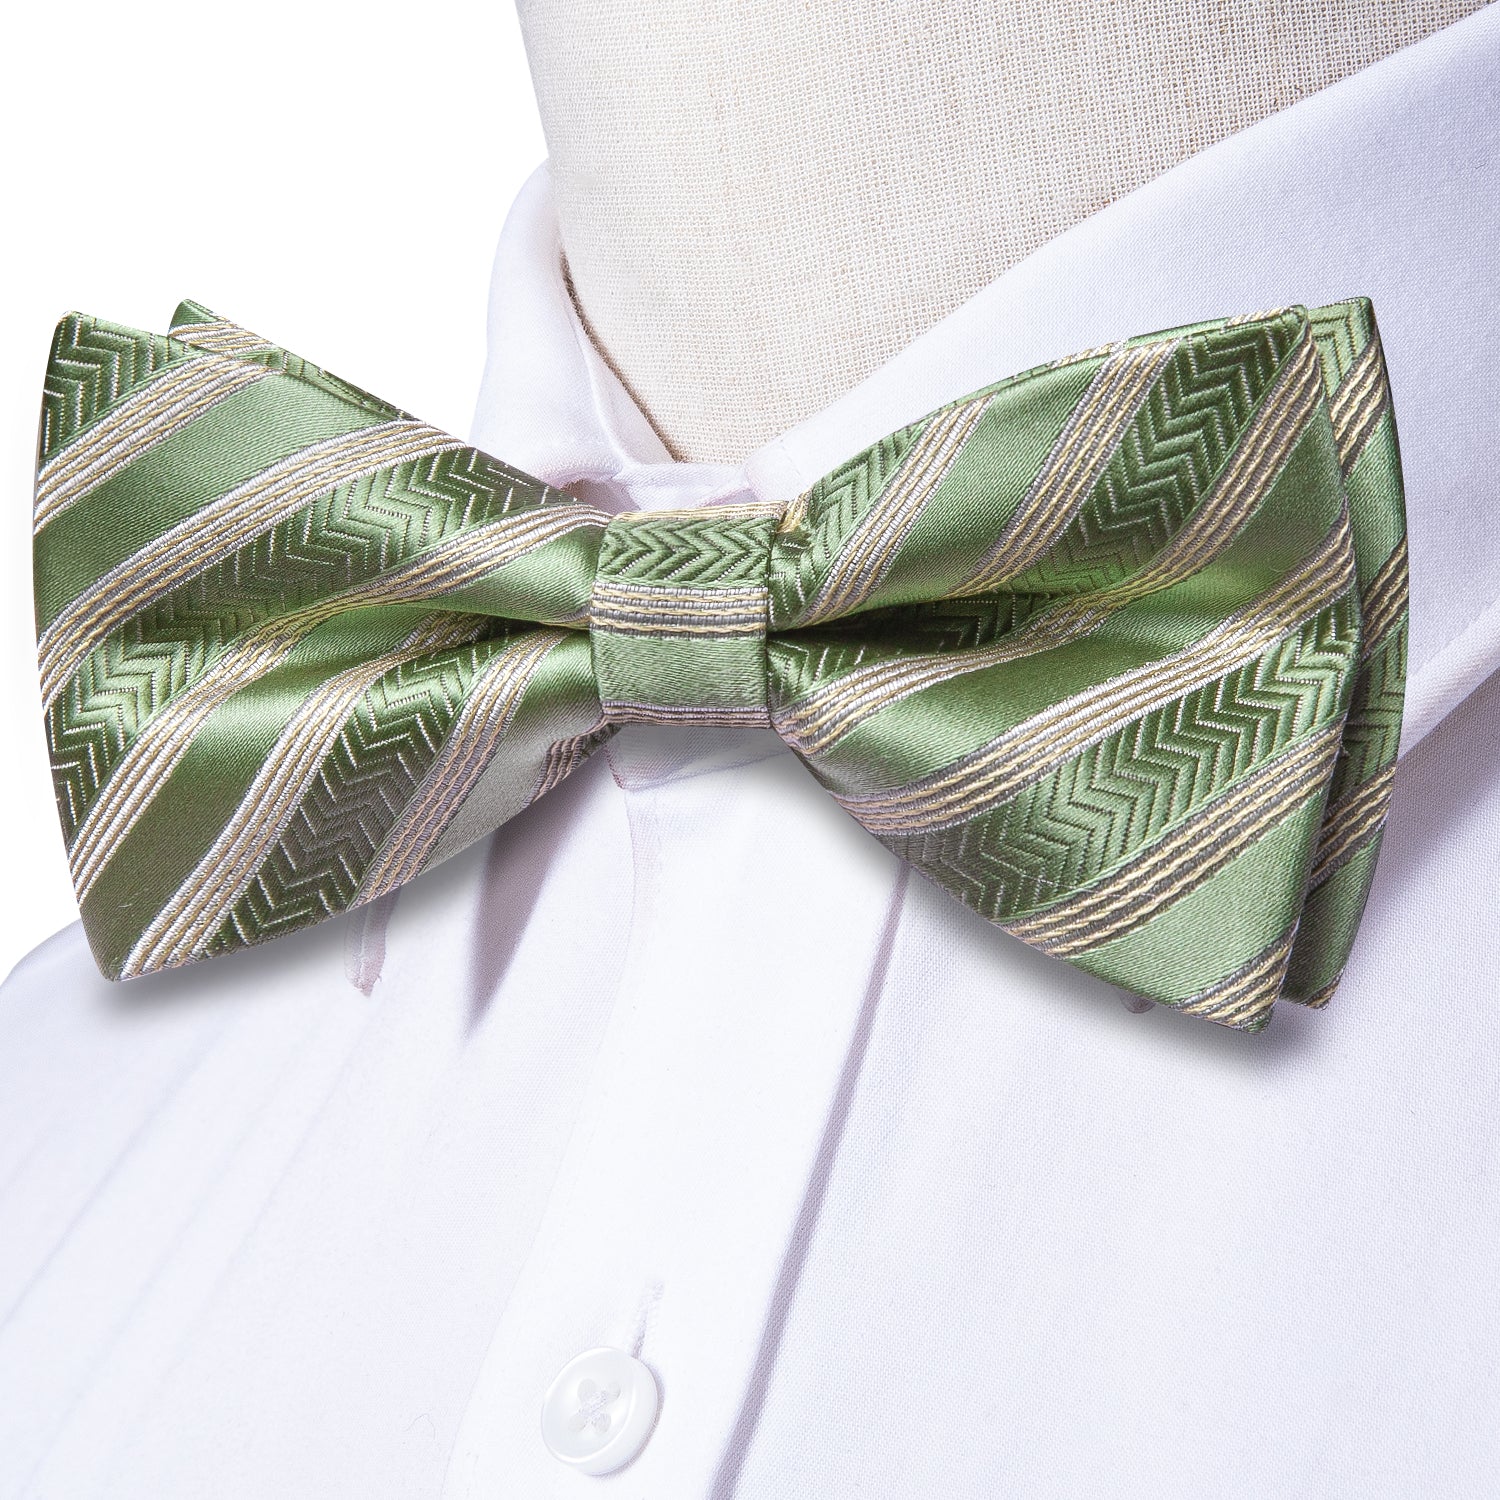 Hi-Tie Green Beige Striped Pre-tied Bow Tie Hanky Cufflinks Set